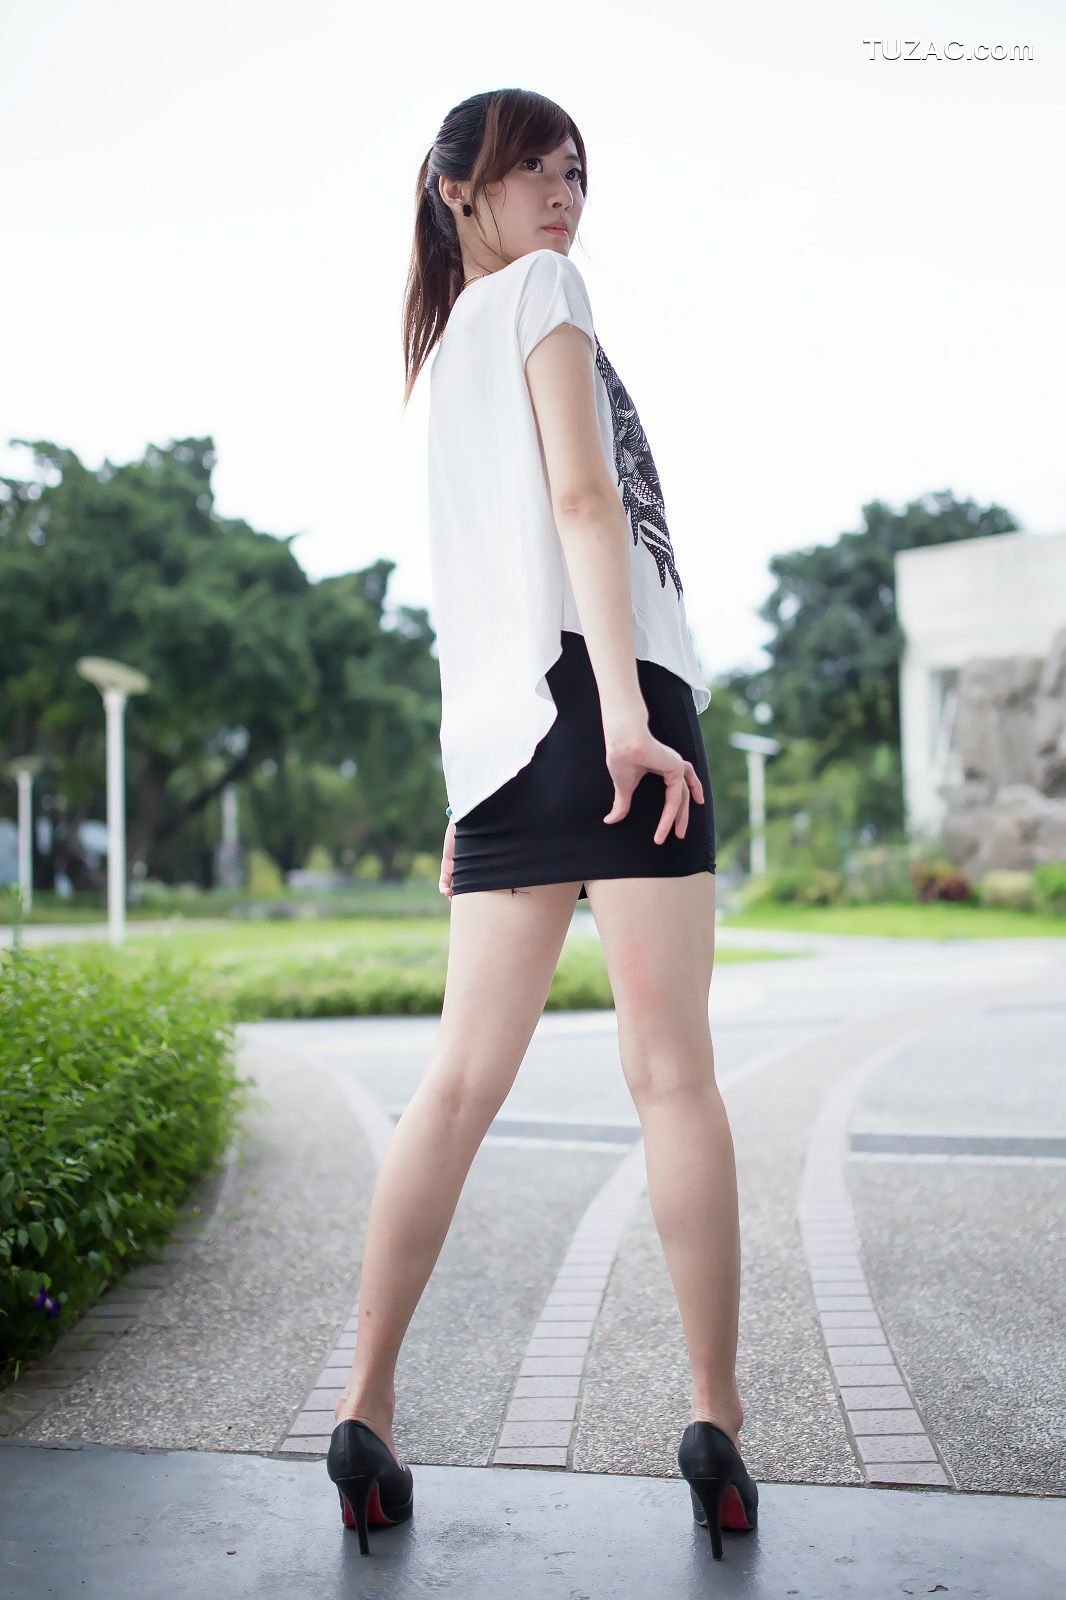 台湾正妹_台湾模特Queena/林茉晶《公园外拍》写真集